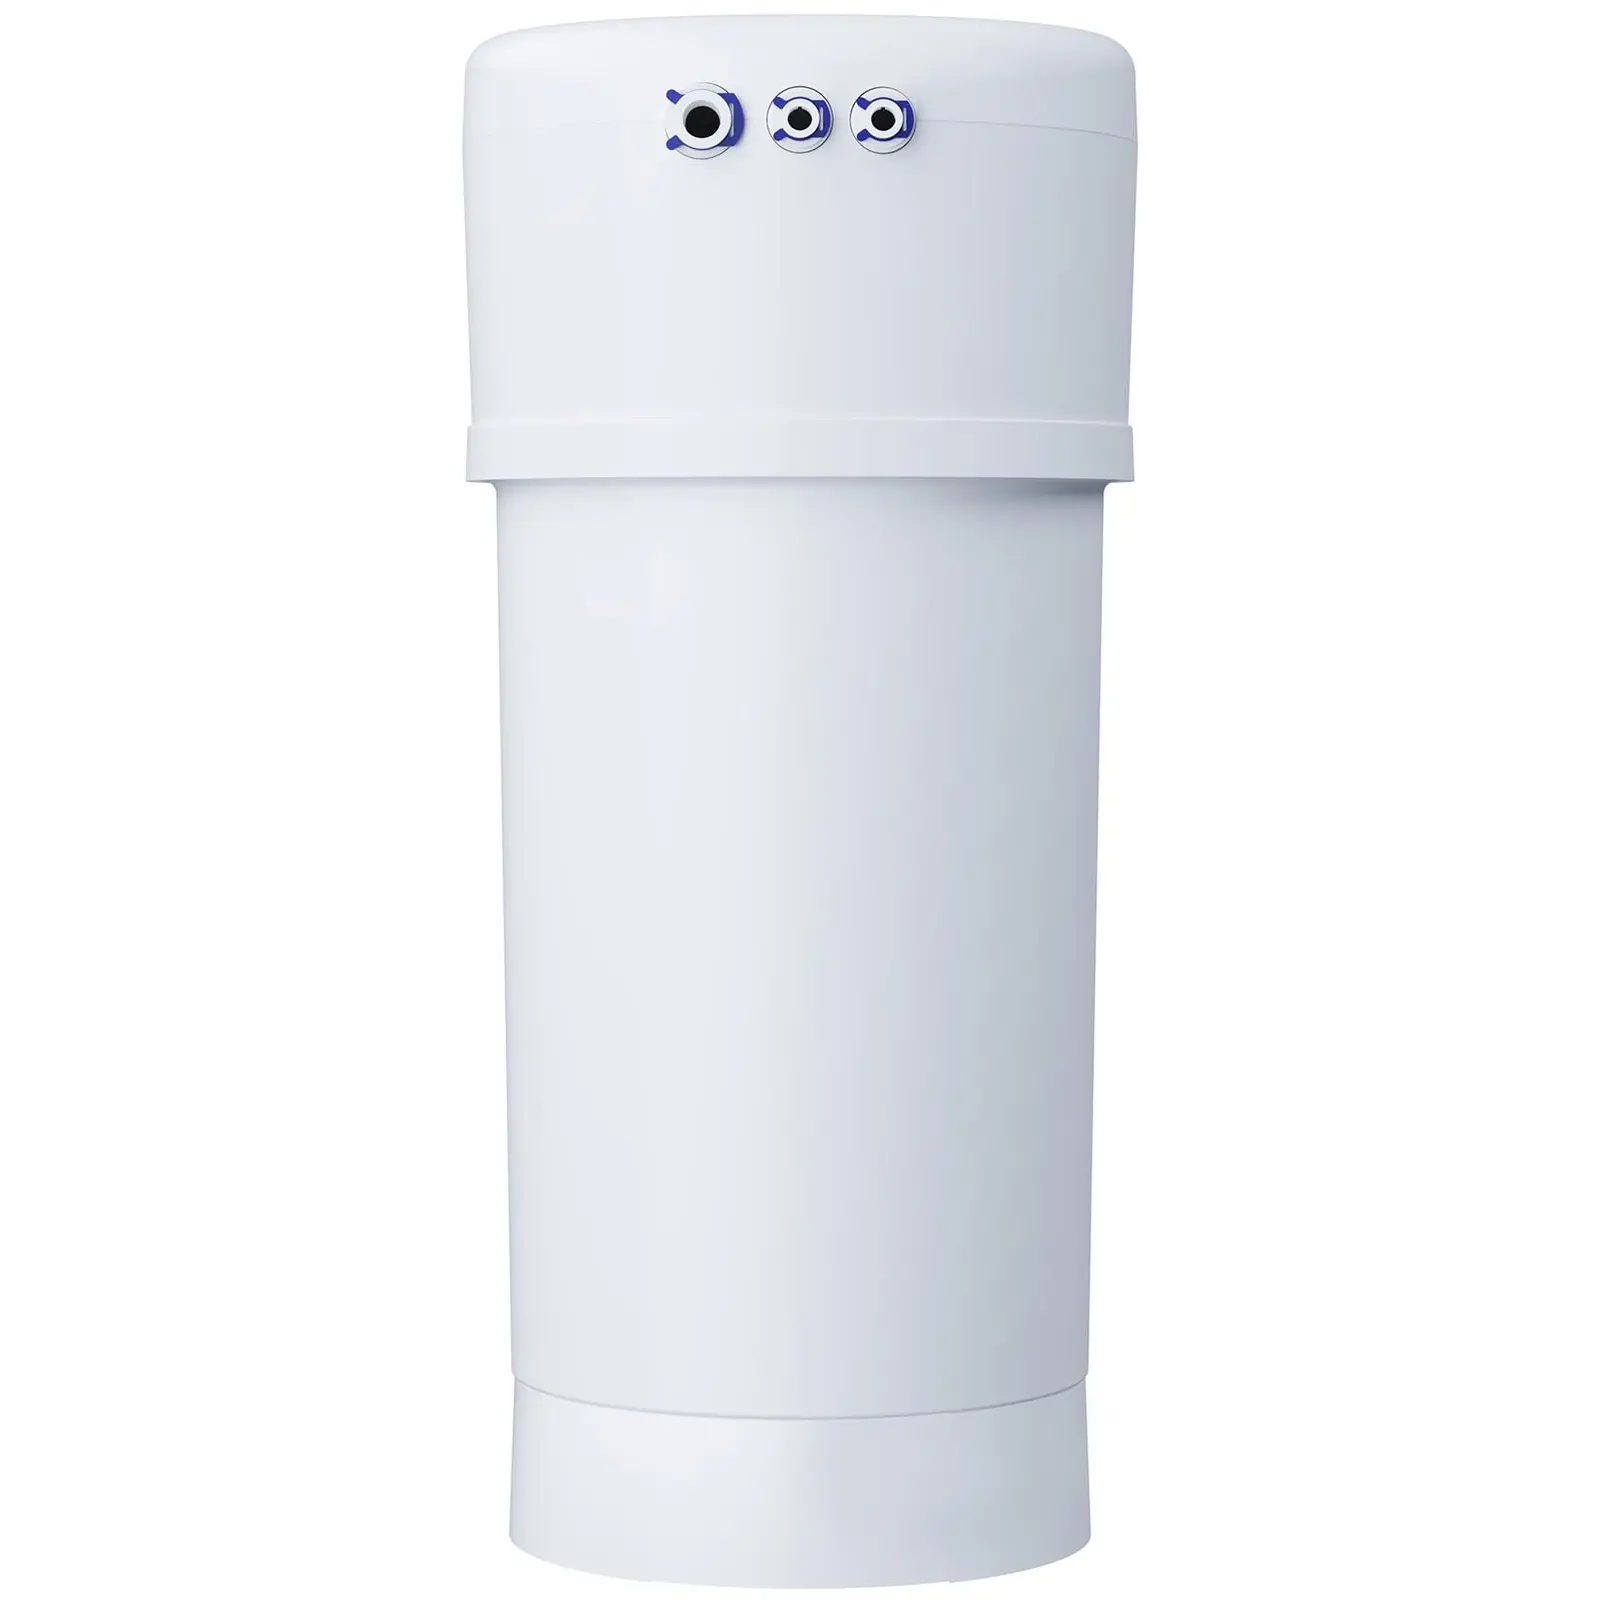 Система за обратна осмоза с кран -190 л/ден - Aquaphor